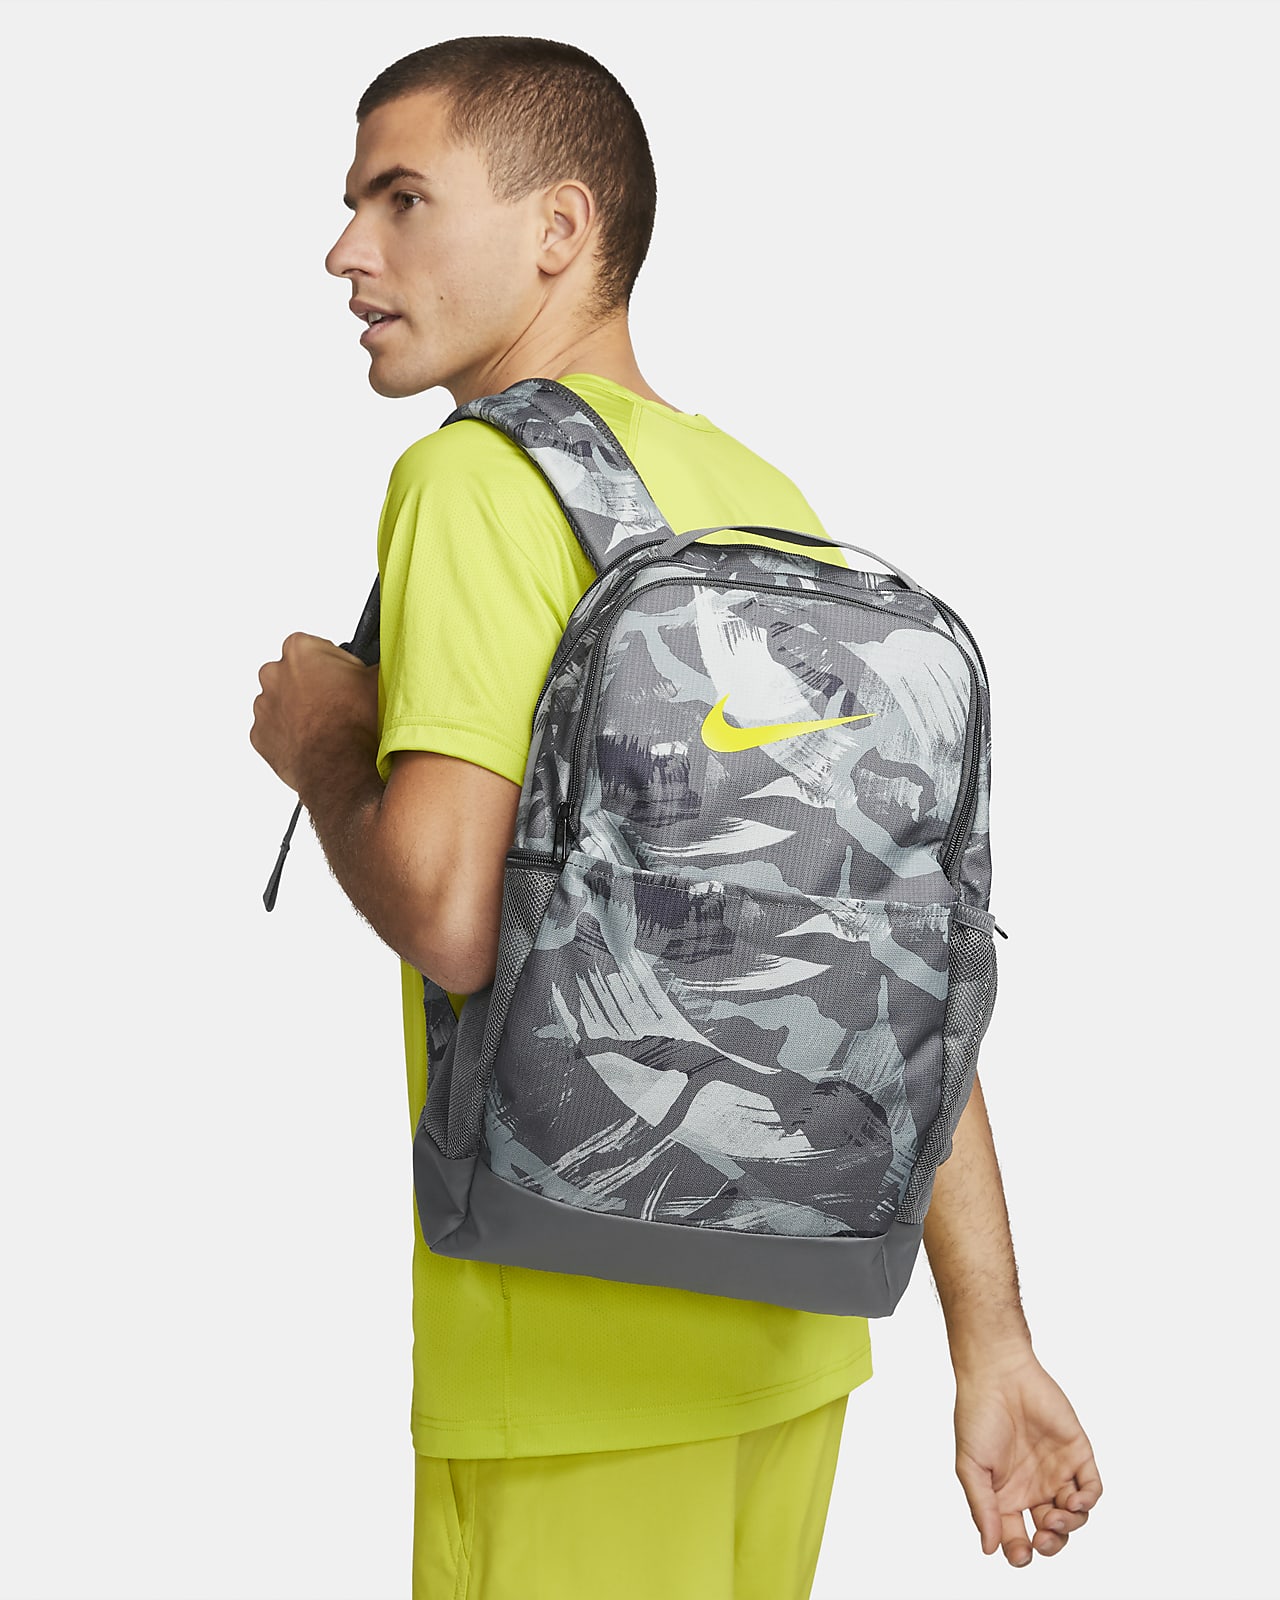 Nike Brasilia Printed backpack 010 CW9024-010